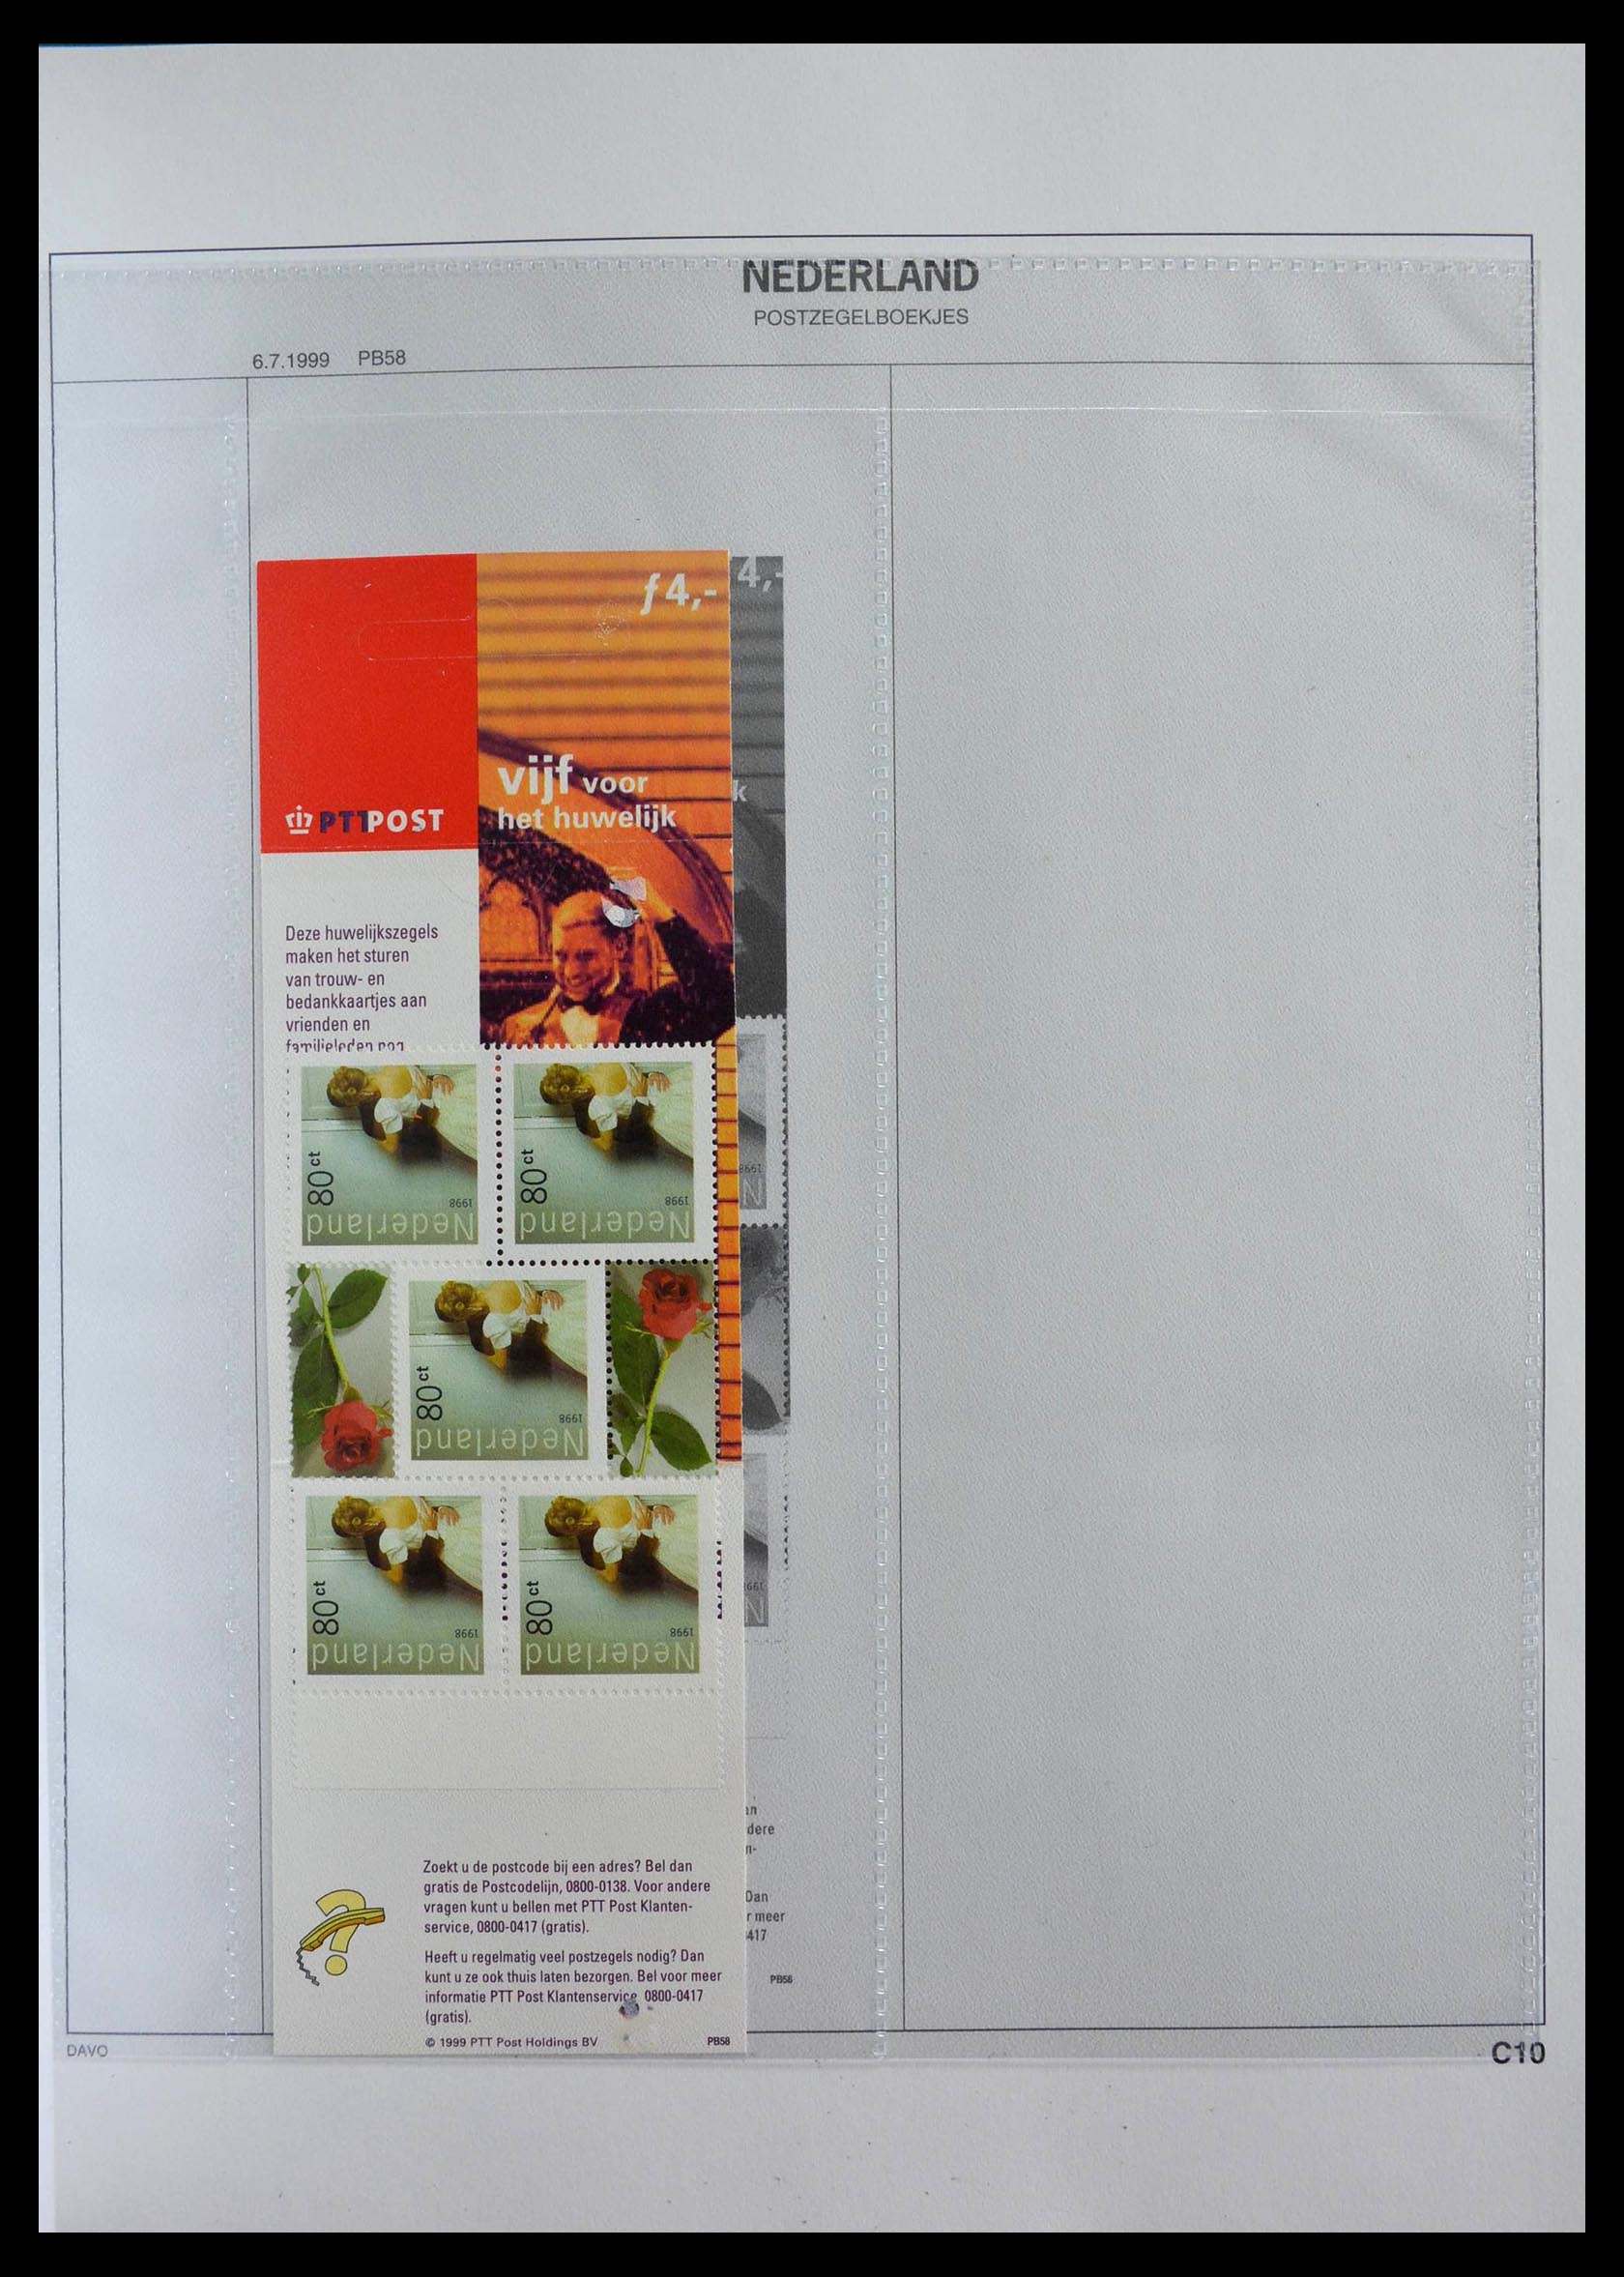 28853 031 - 28853 Netherlands stampbooklets 1964-2005.